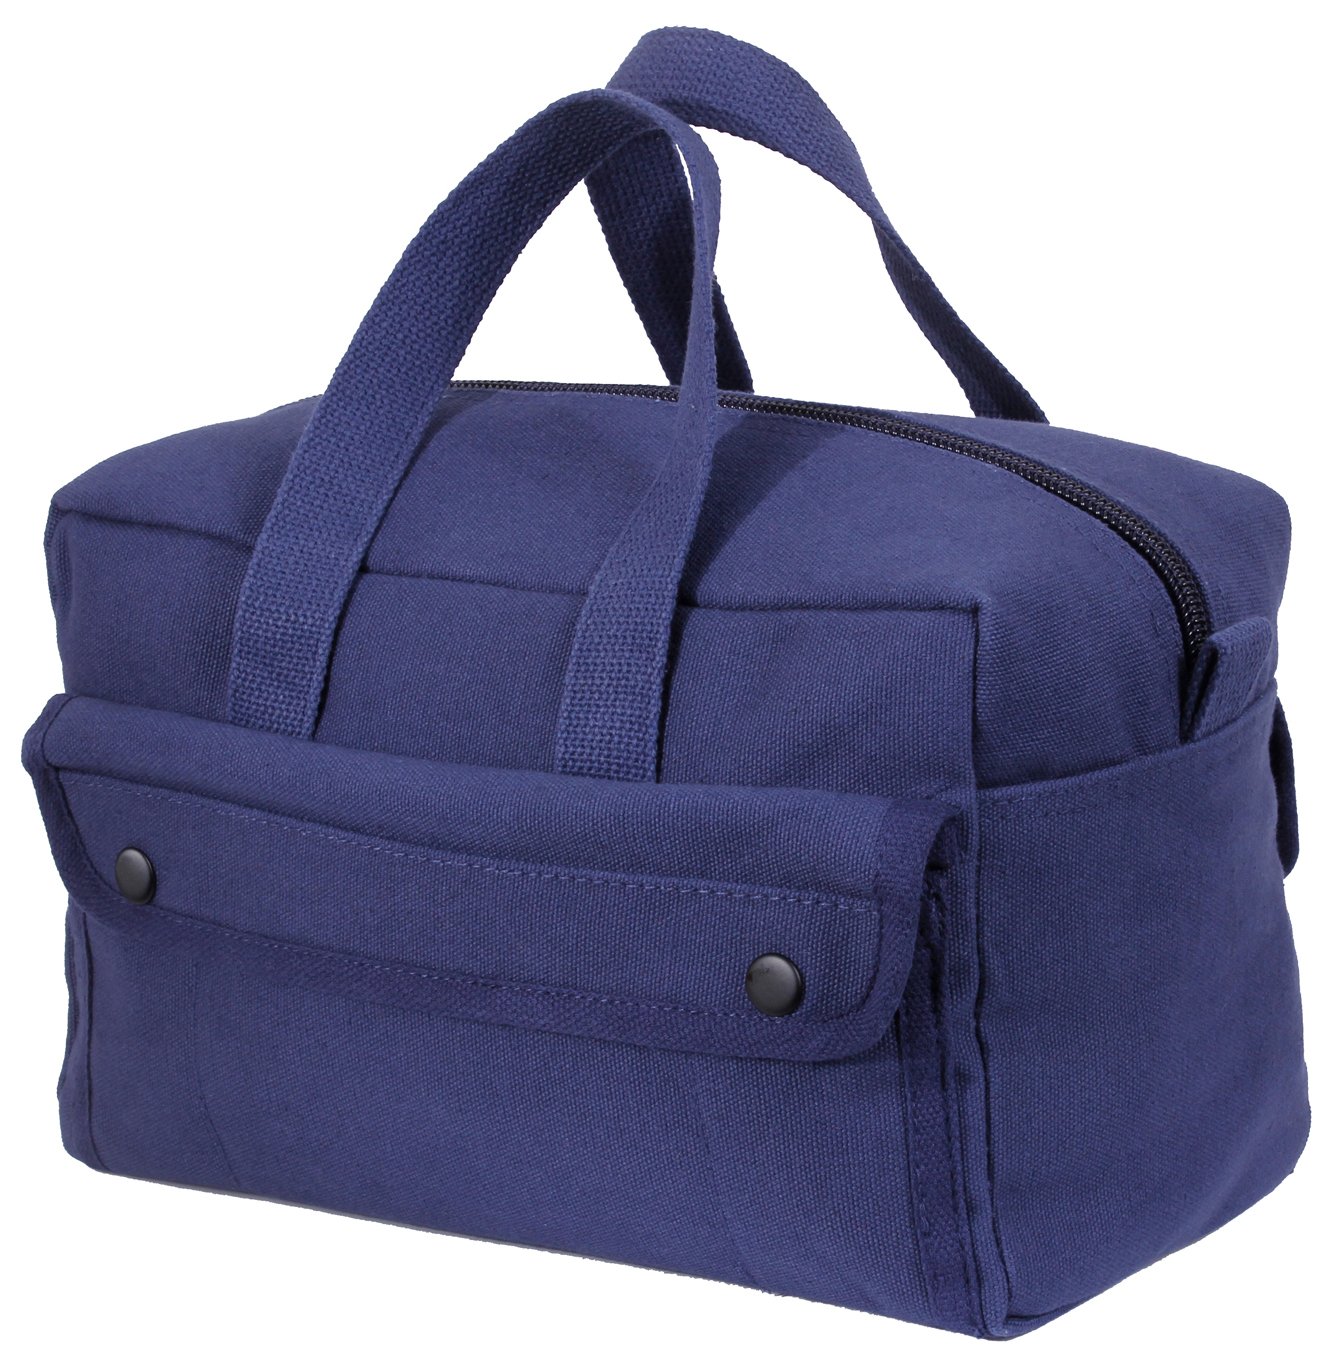 Rothco gI Type Mechanics Tool Bags, Navy Blue